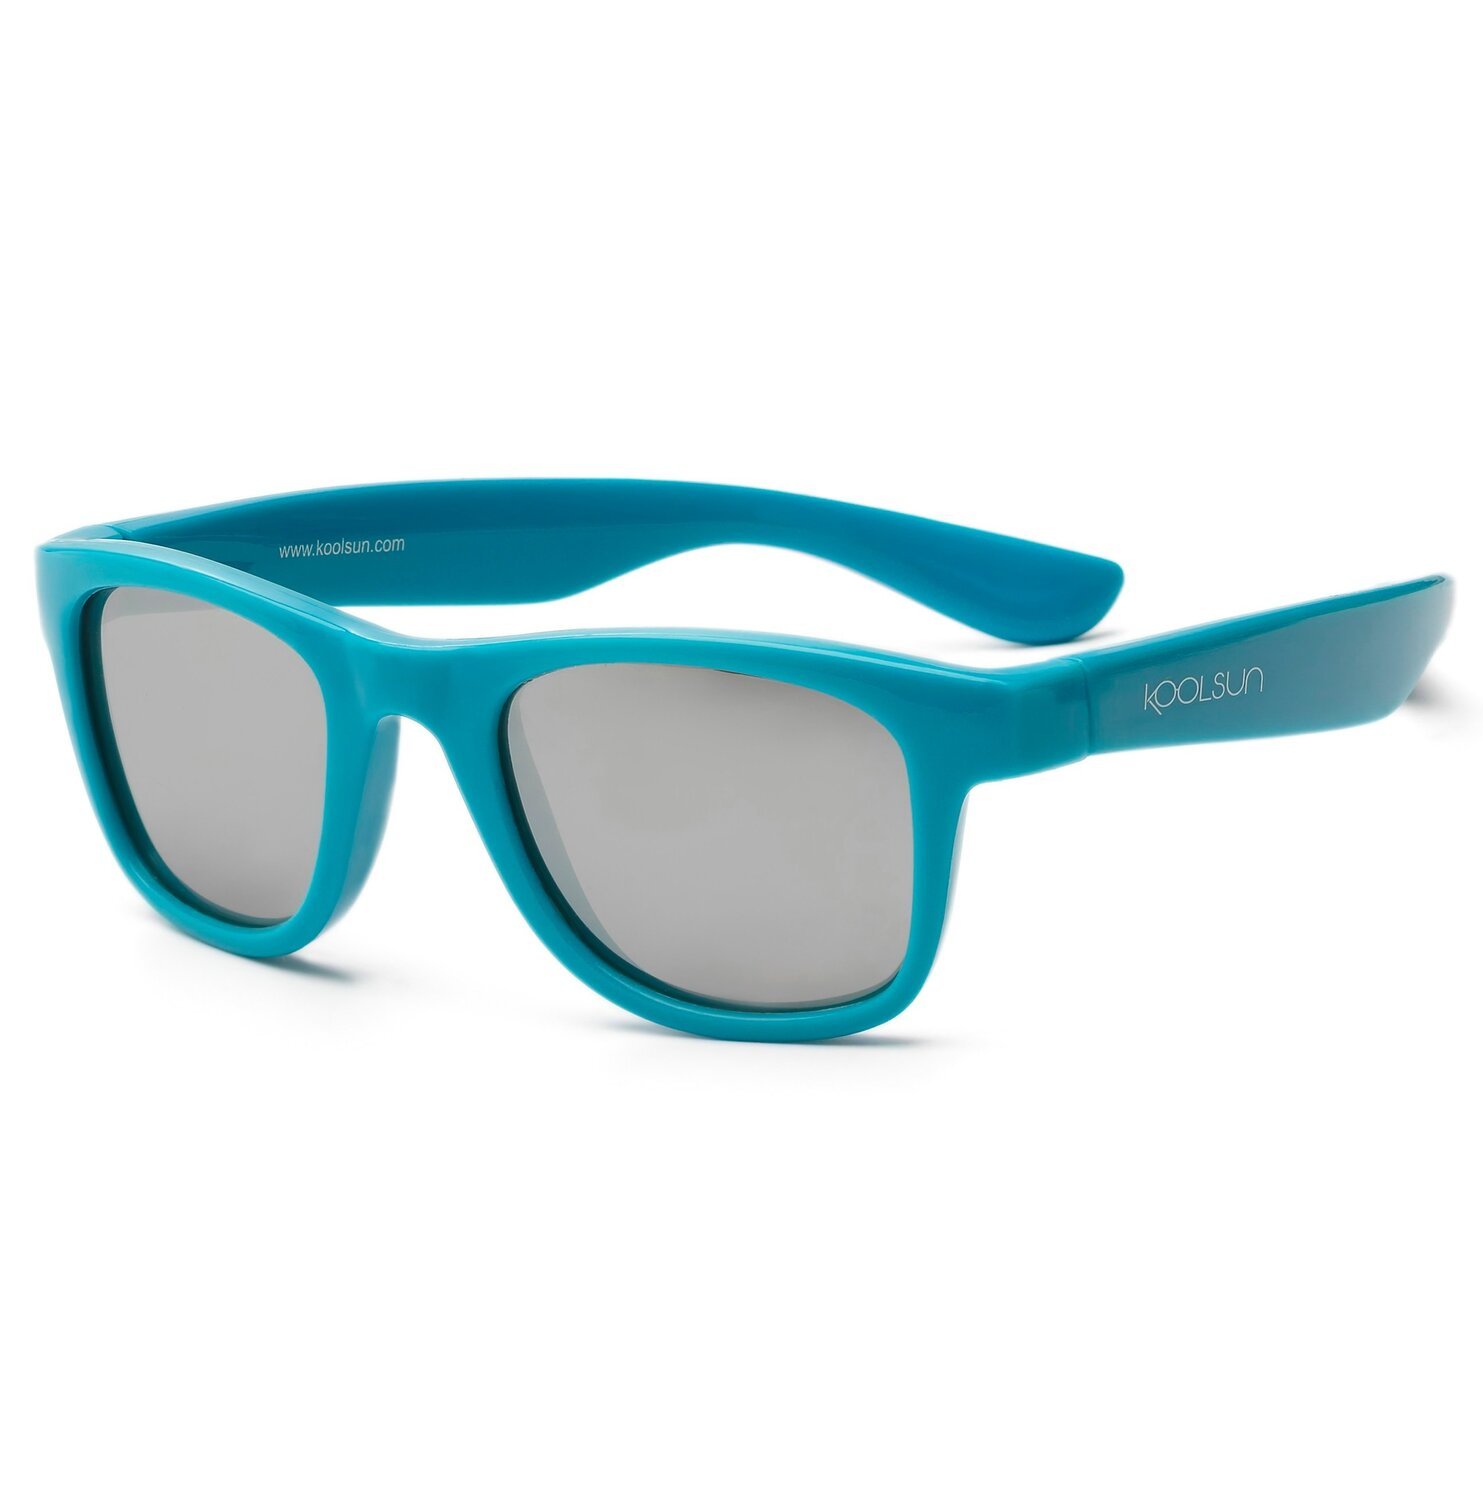 Детские солнцезащитные очки Koolsun Wawe голубые (Размер 1+) (KS-WACB001) фото 